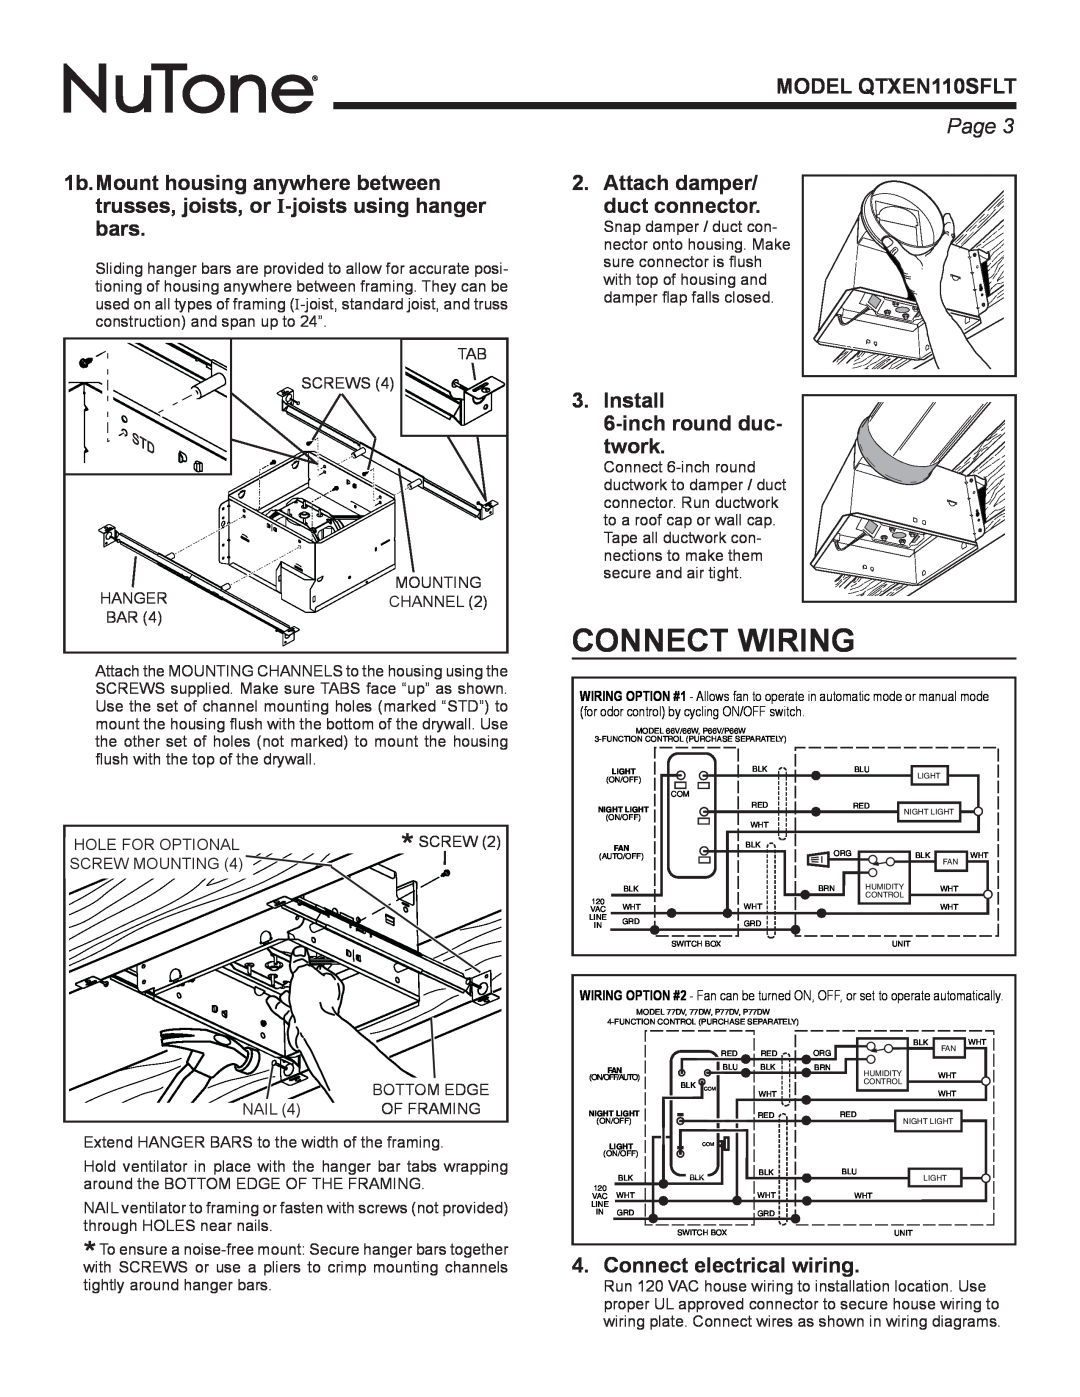 NuTone warranty Connect Wiring, Attach damper/ duct connector, Install 6-inchround duc twork, MODEL QTXEN110SFLT, Page  